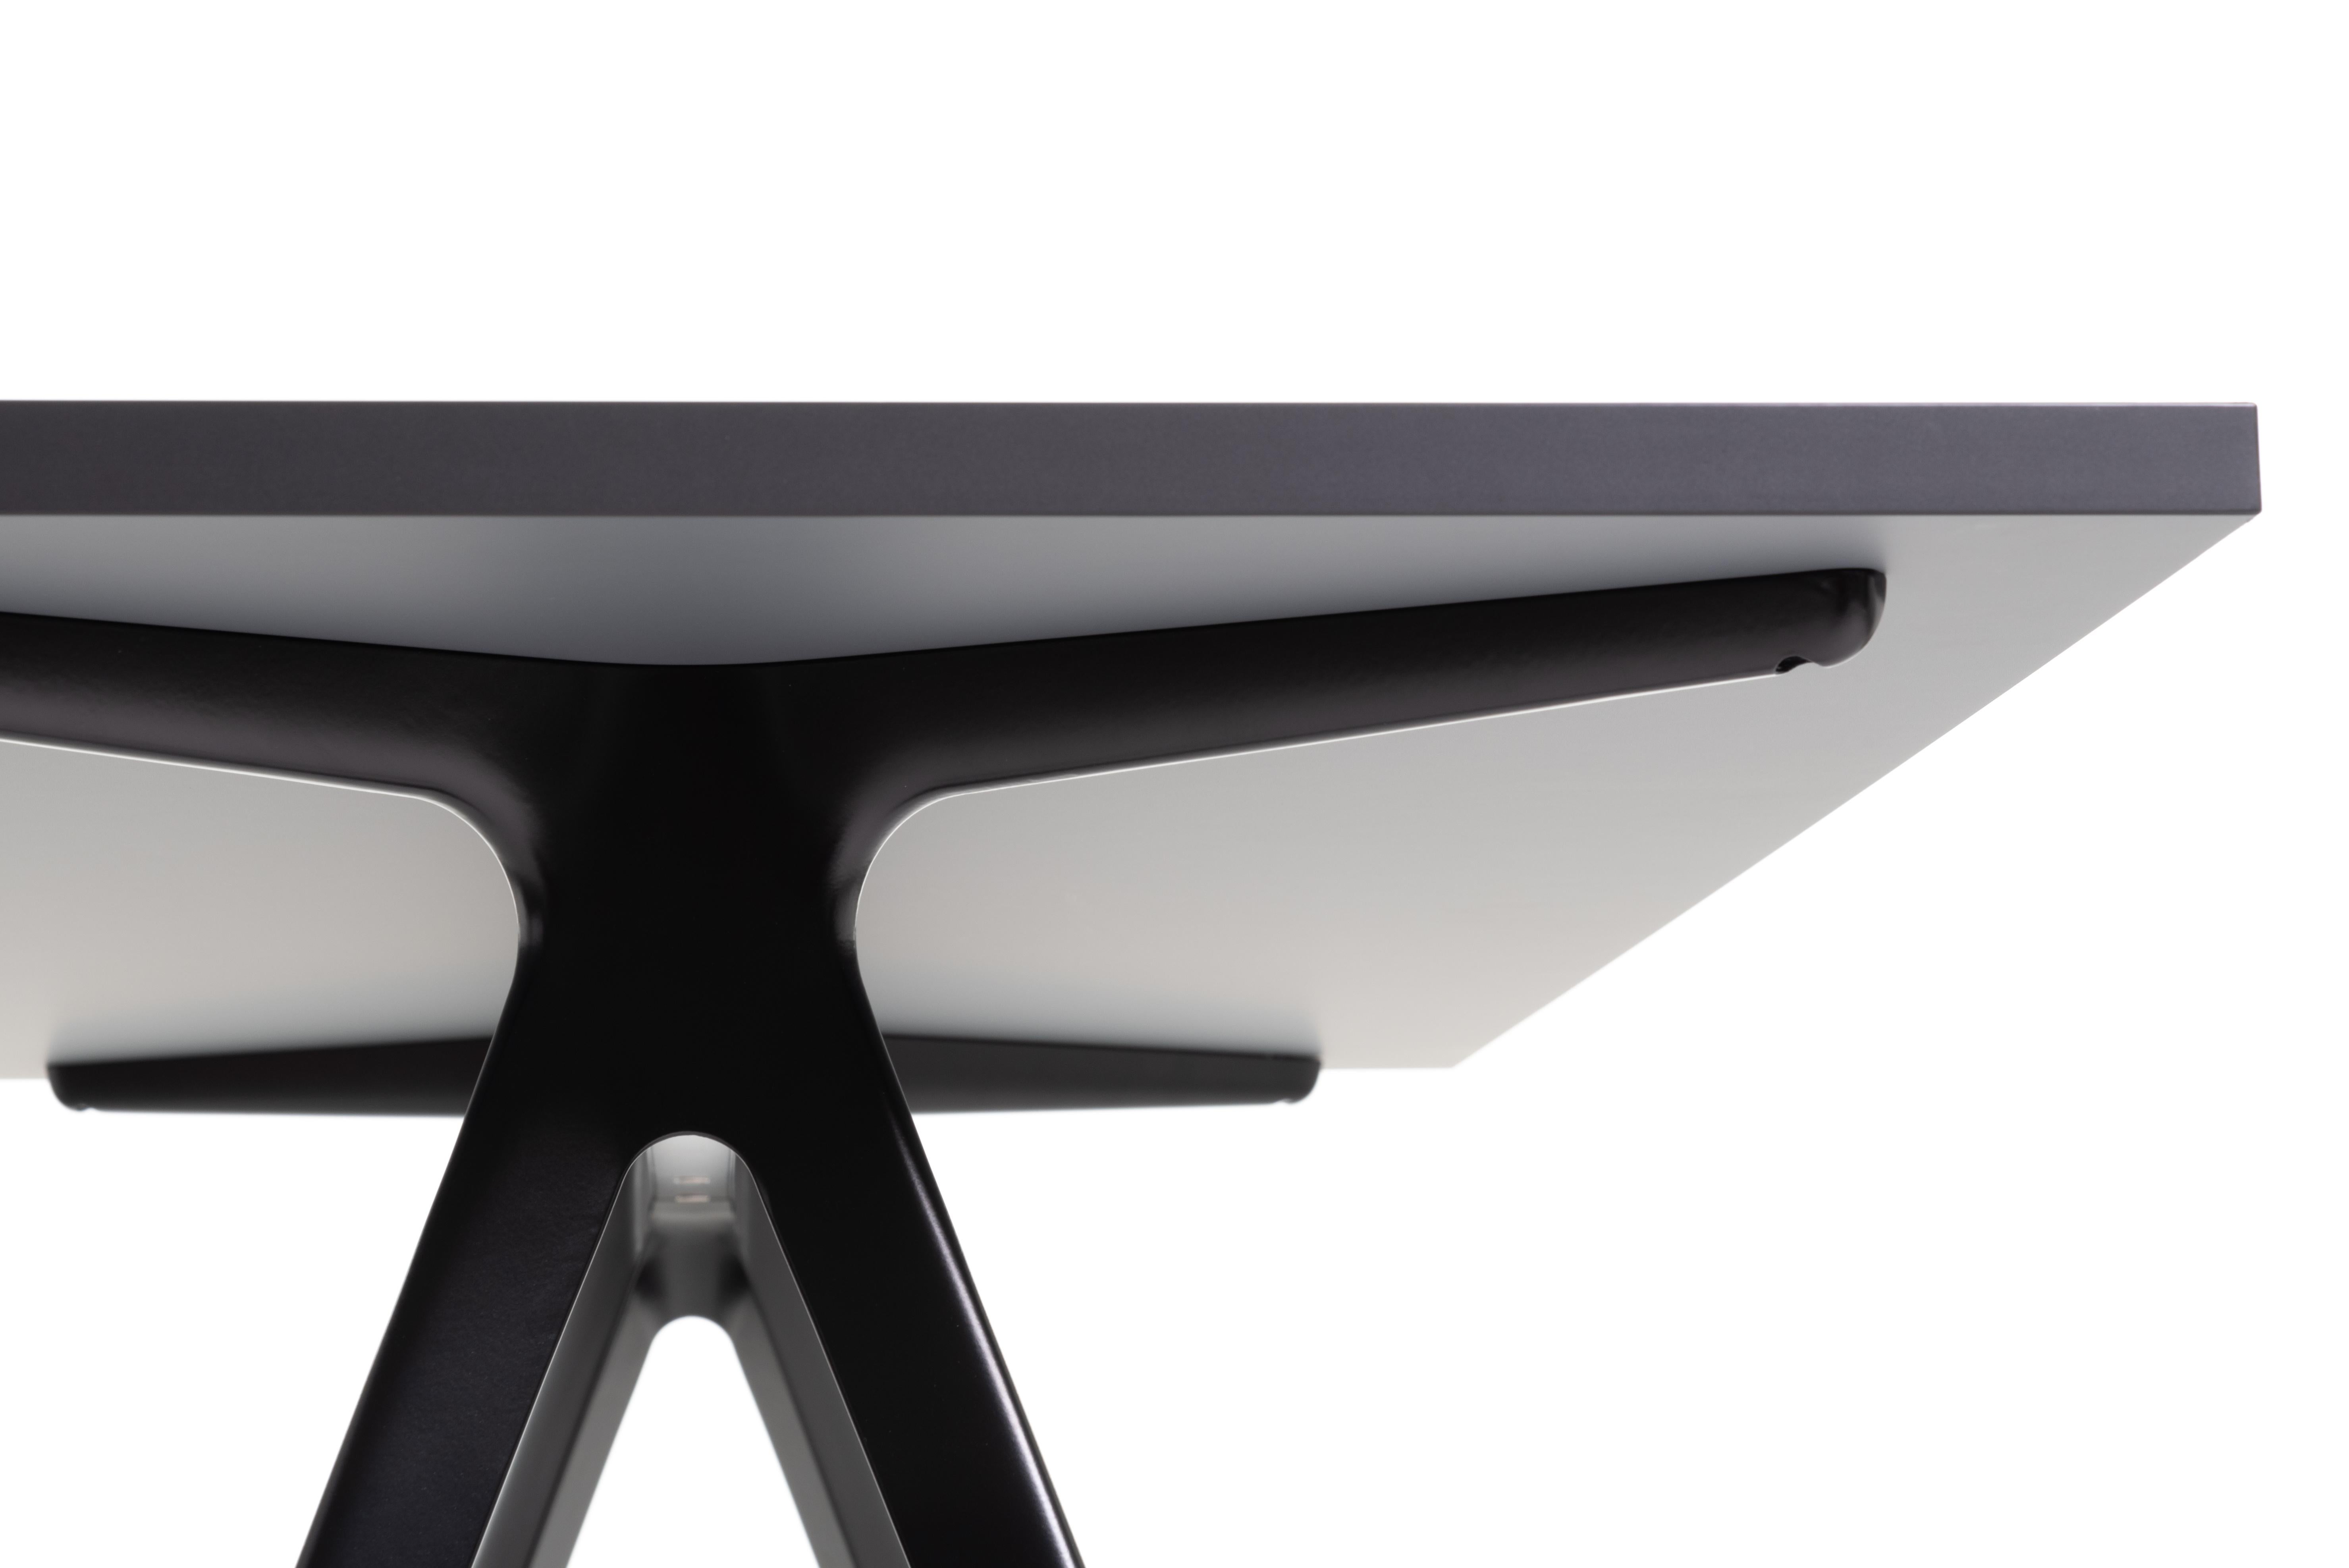 Baguette ist ein rechteckiger, großer Tisch in zwei Teilen. Eine undurchsichtige Platte ruht auf einem äußerst widerstandsfähigen und dennoch zarten Aluminiumsockel.
Wir haben unser Augenmerk auf die Struktur des Projekts gerichtet, um so wenig